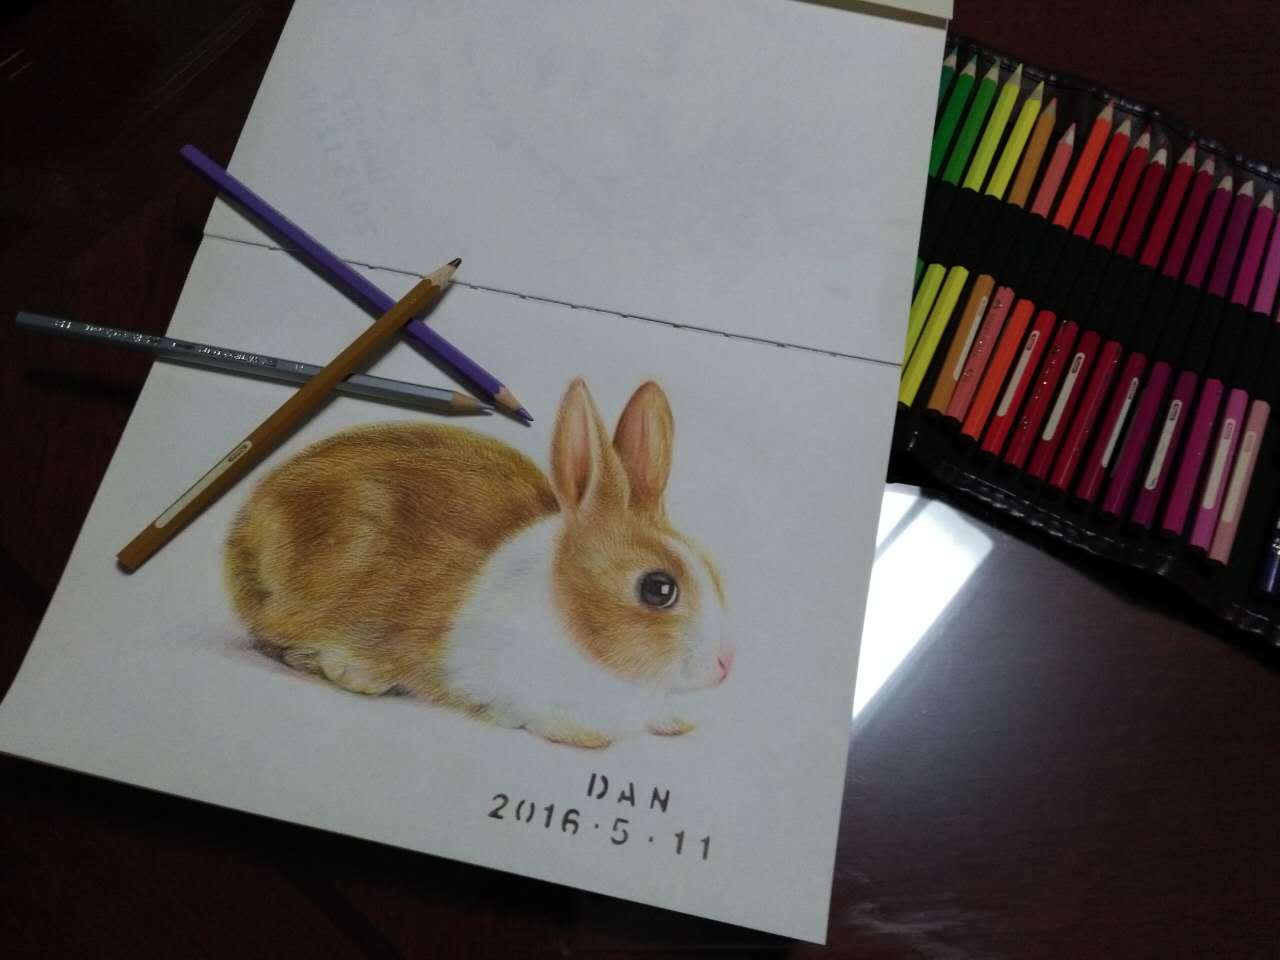 5-8岁儿童画大全 兔子怎么画💛巧艺网